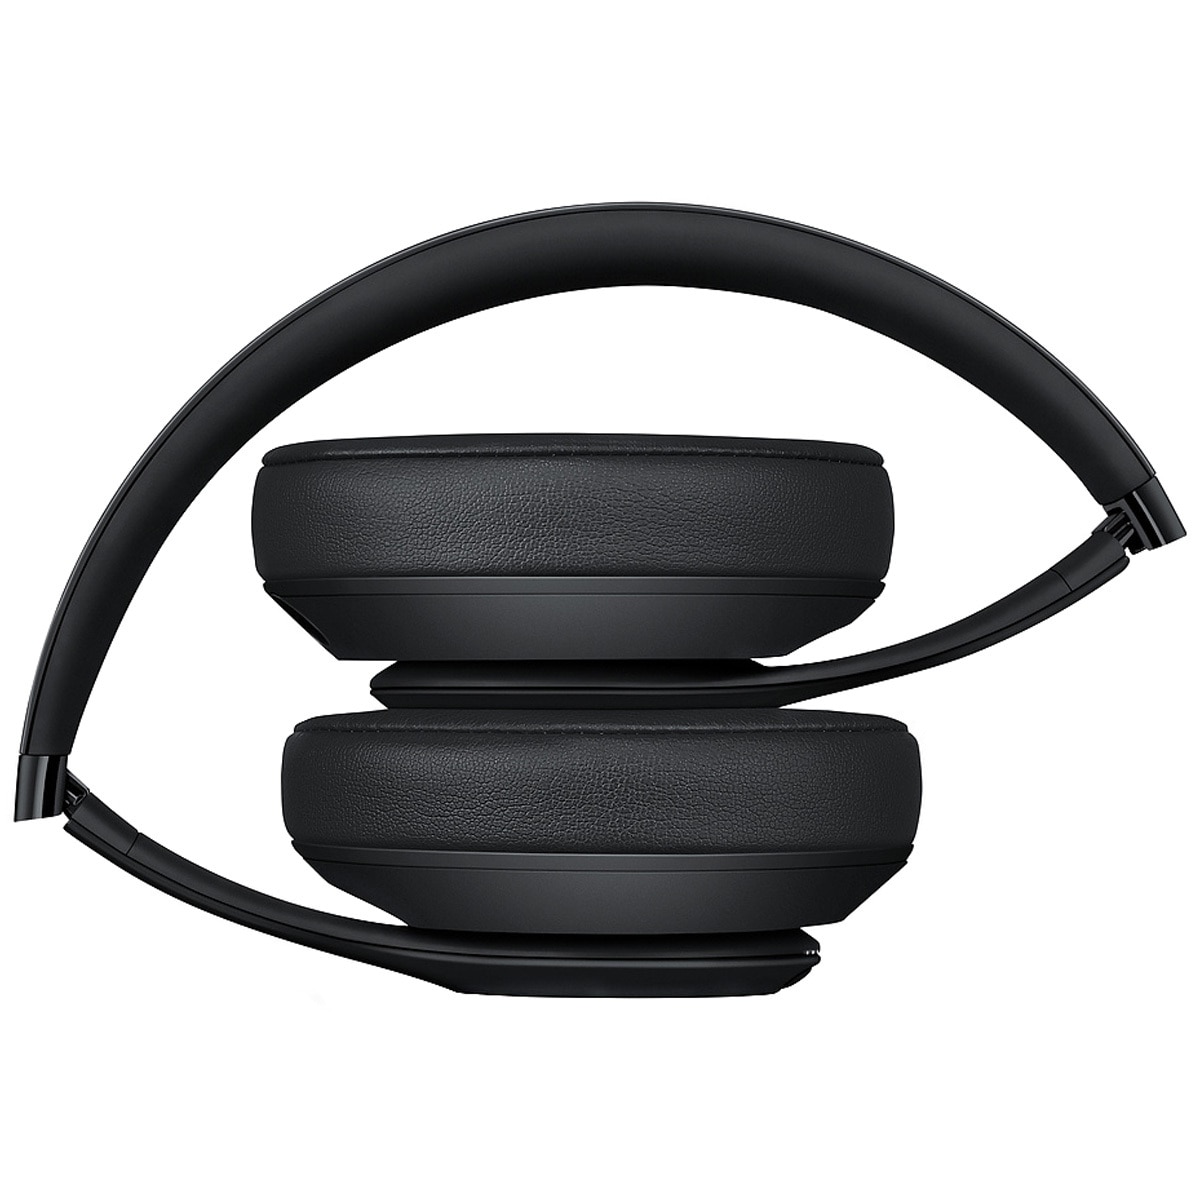 Beats Studio3 Wireless Headphones MQ562PA/A - Matt Black